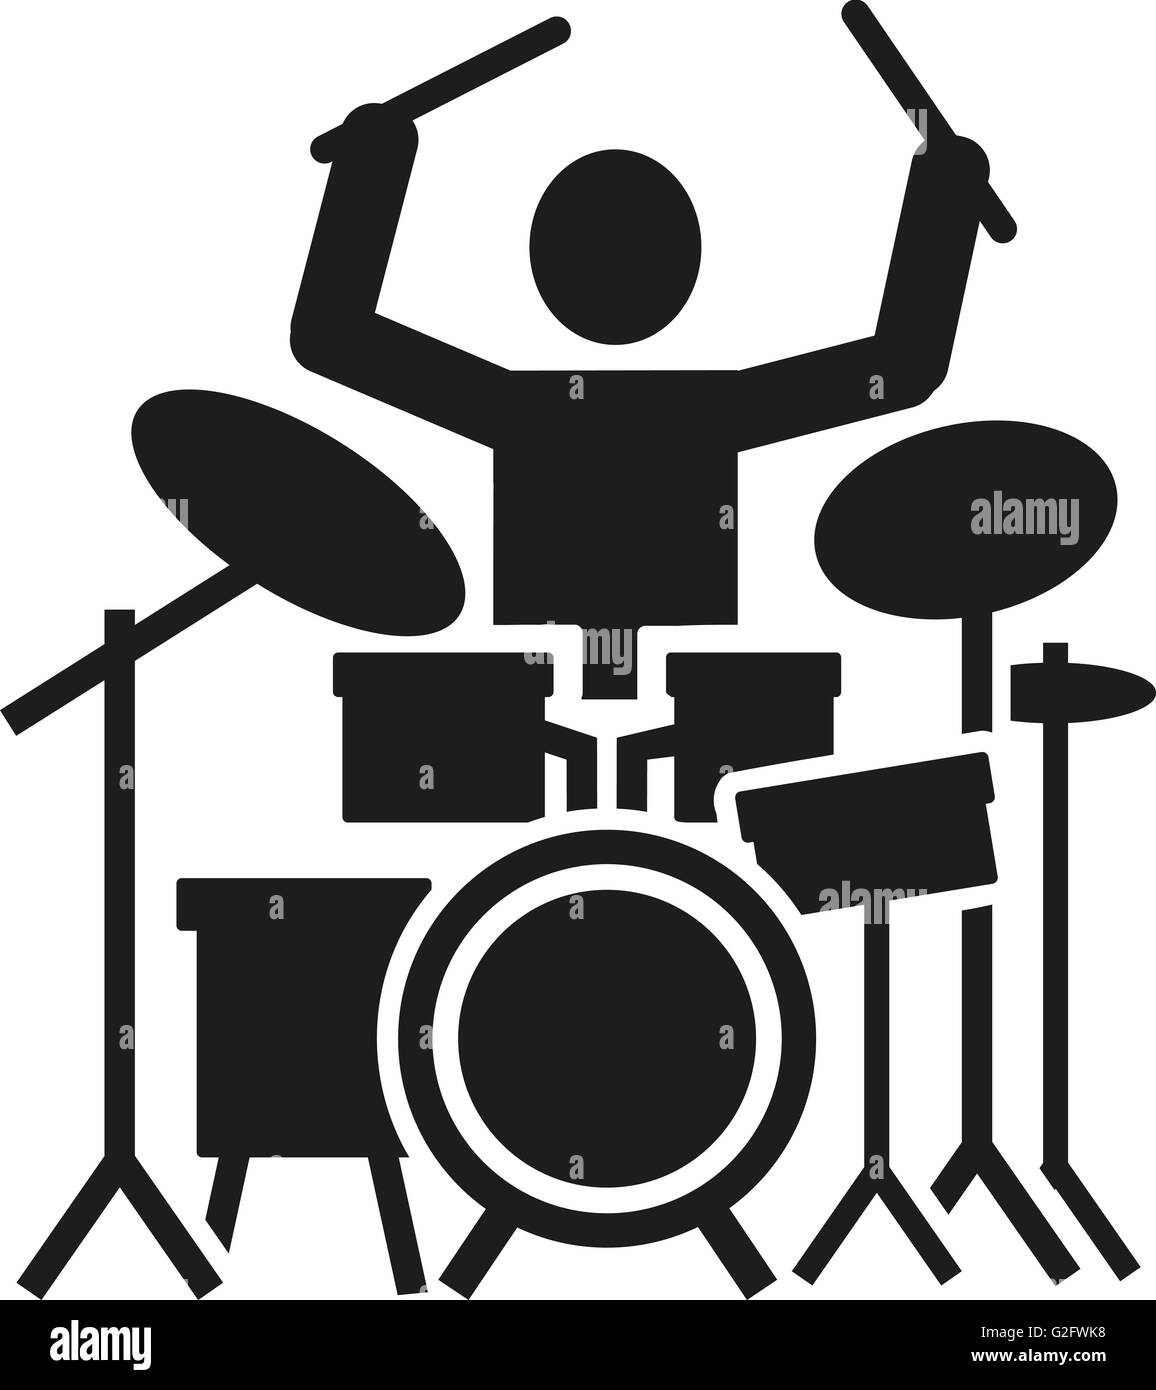 Symbol eines Schlagzeugers mit Drum-kit Stockfotografie - Alamy